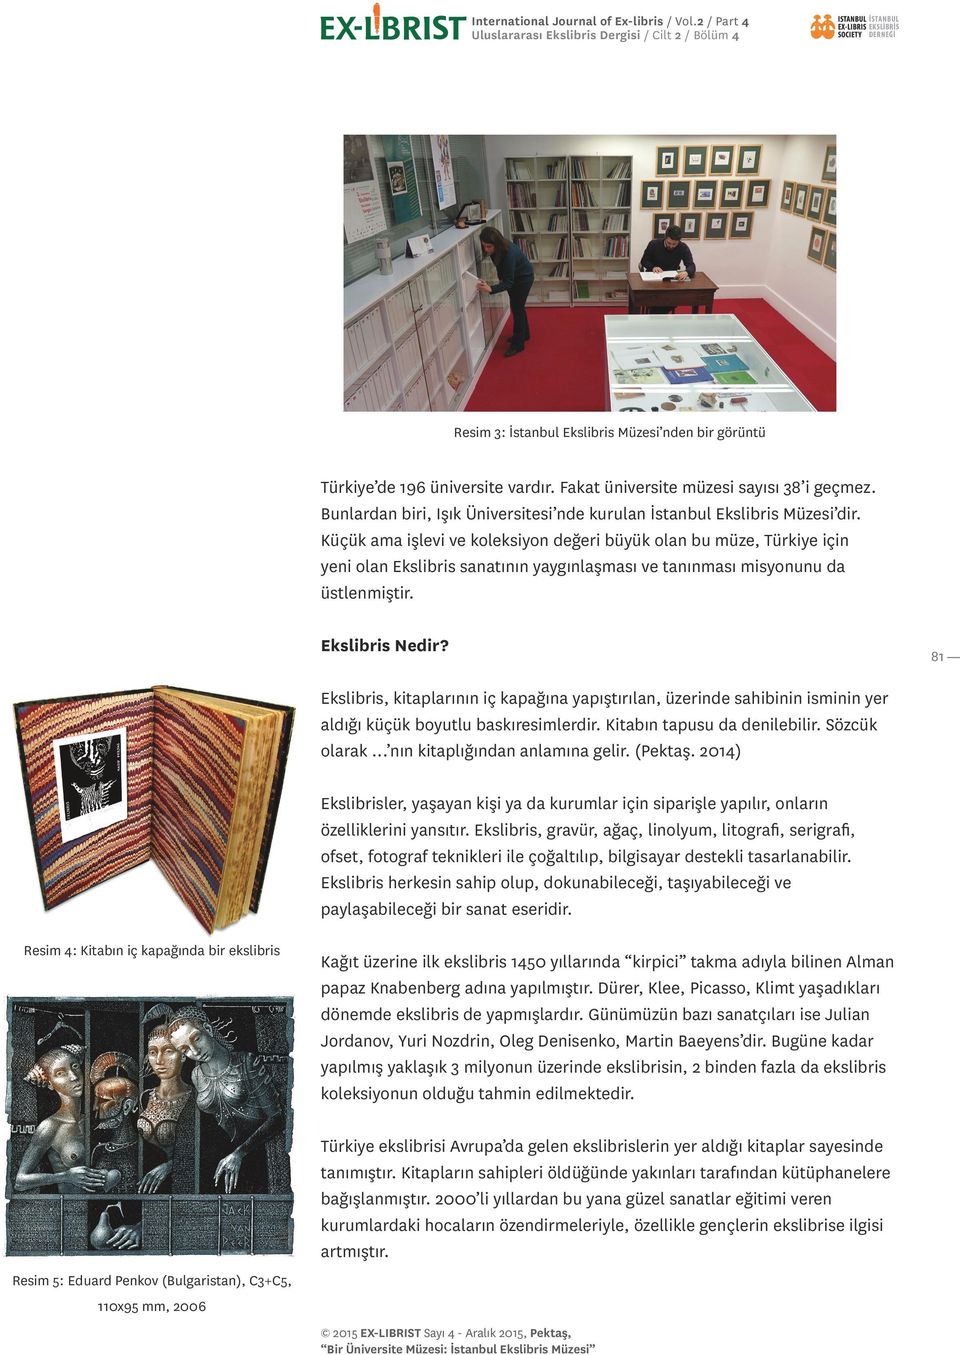 Küçük ama işlevi ve koleksiyon değeri büyük olan bu müze, Türkiye için yeni olan Ekslibris sanatının yaygınlaşması ve tanınması misyonunu da üstlenmiştir. Ekslibris Nedir?